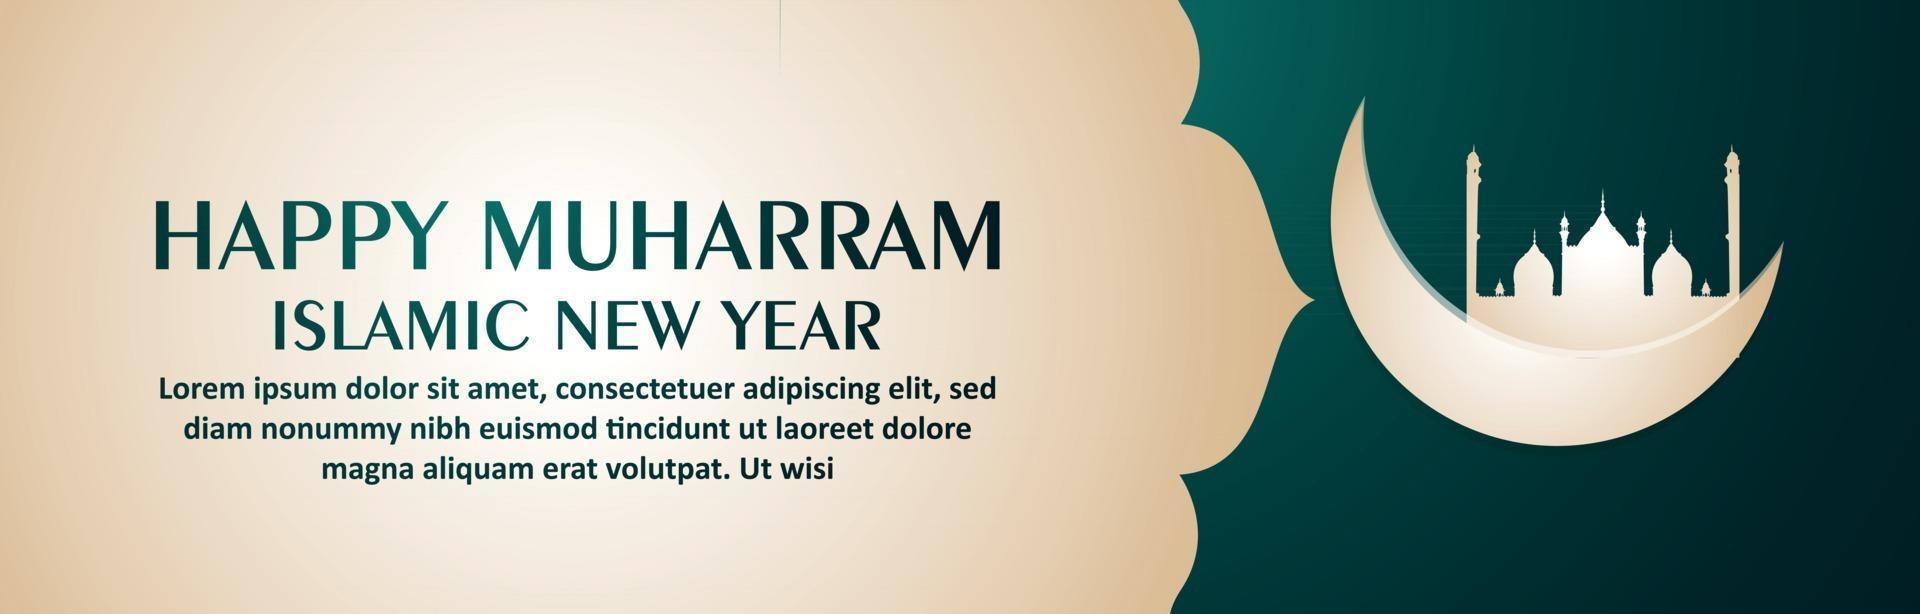 lyckligt muharram islamiskt nyårsfirande banner eller rubrik vektor